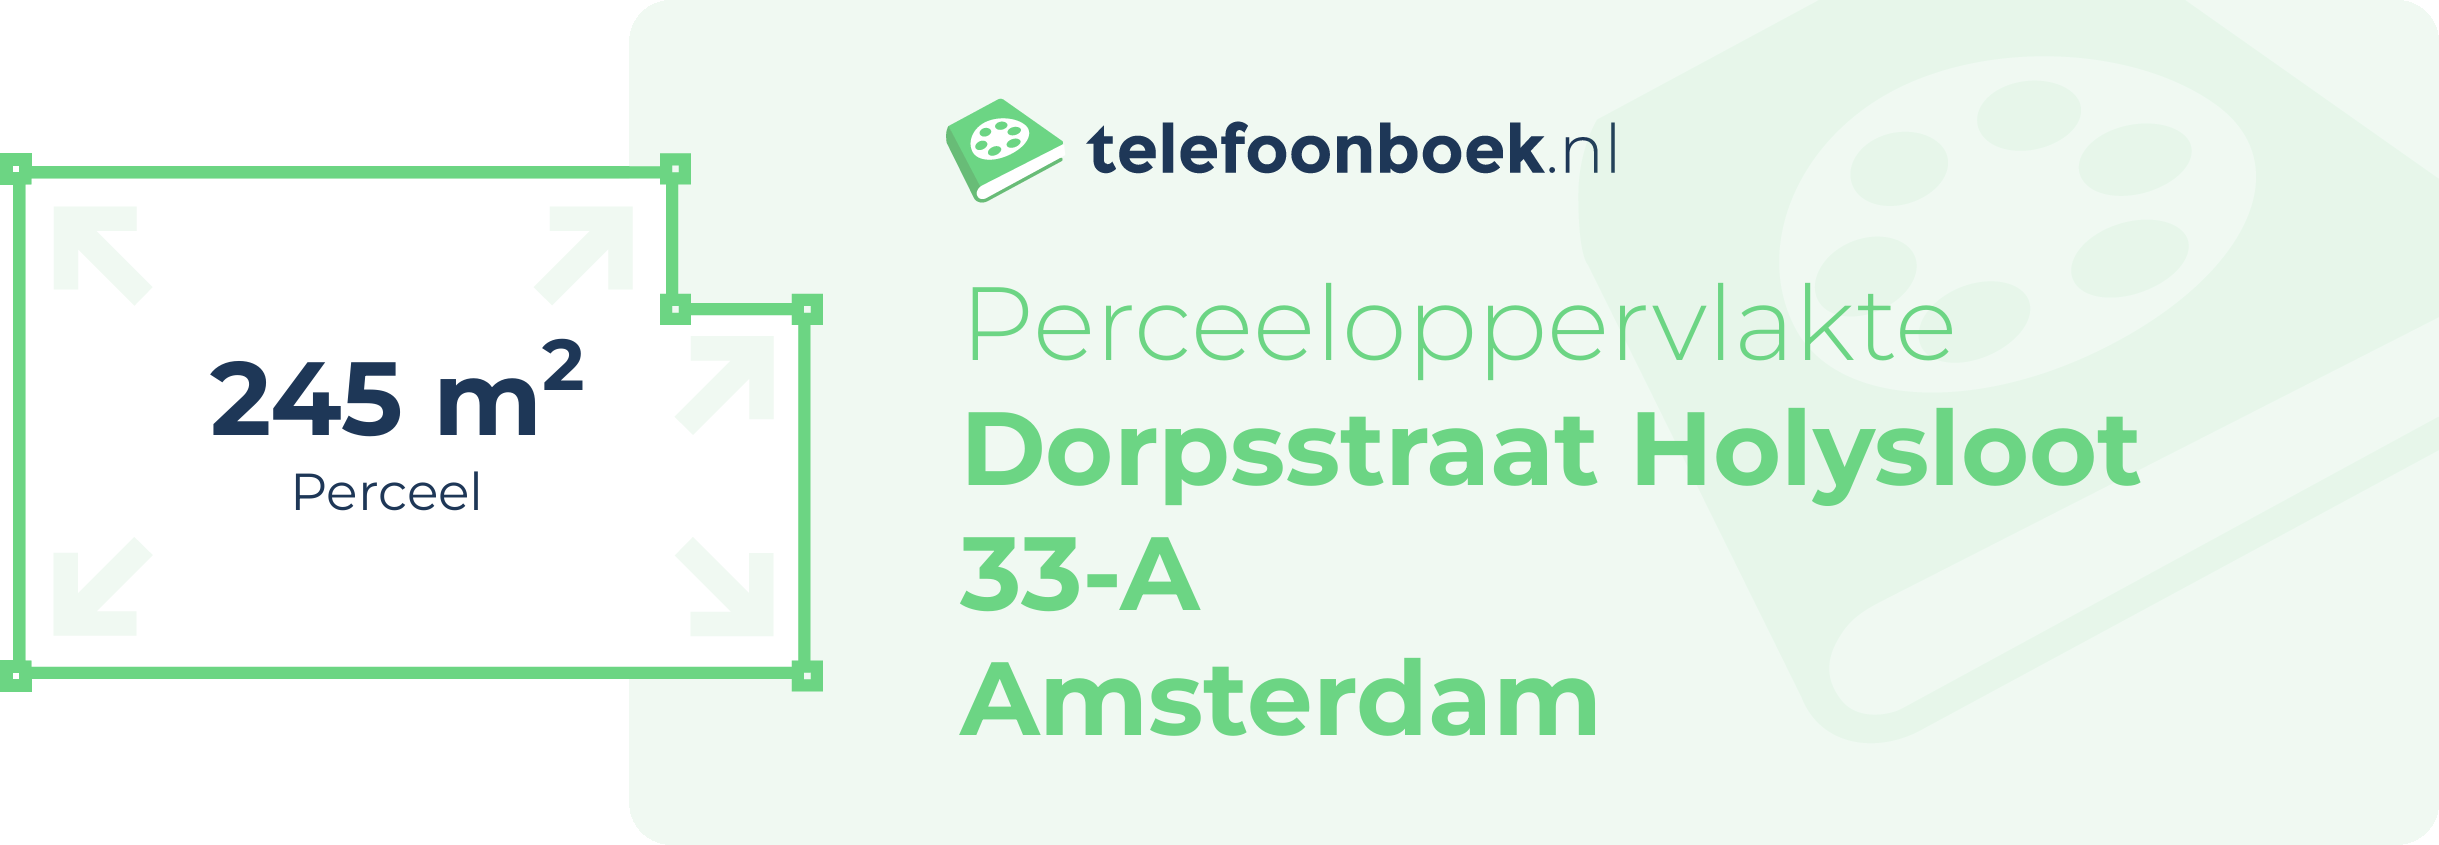 Perceeloppervlakte Dorpsstraat Holysloot 33-A Amsterdam